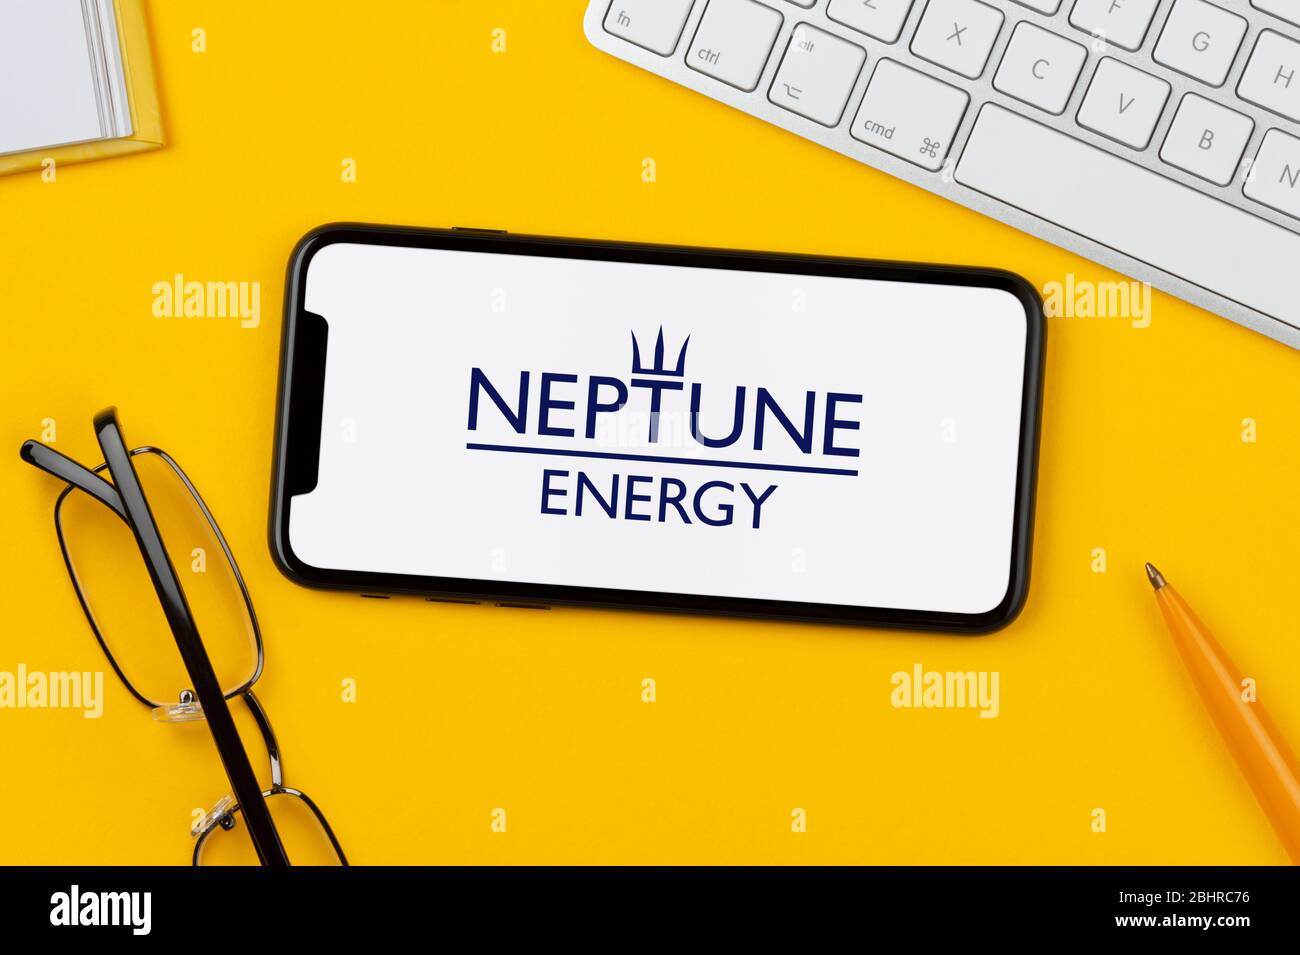 Ein Smartphone mit dem Neptune Energy Logo liegt auf einem gelben Hintergrund zusammen mit Tastatur, Brille, Stift und Buch (nur zur redaktionellen Verwendung). Stockfoto